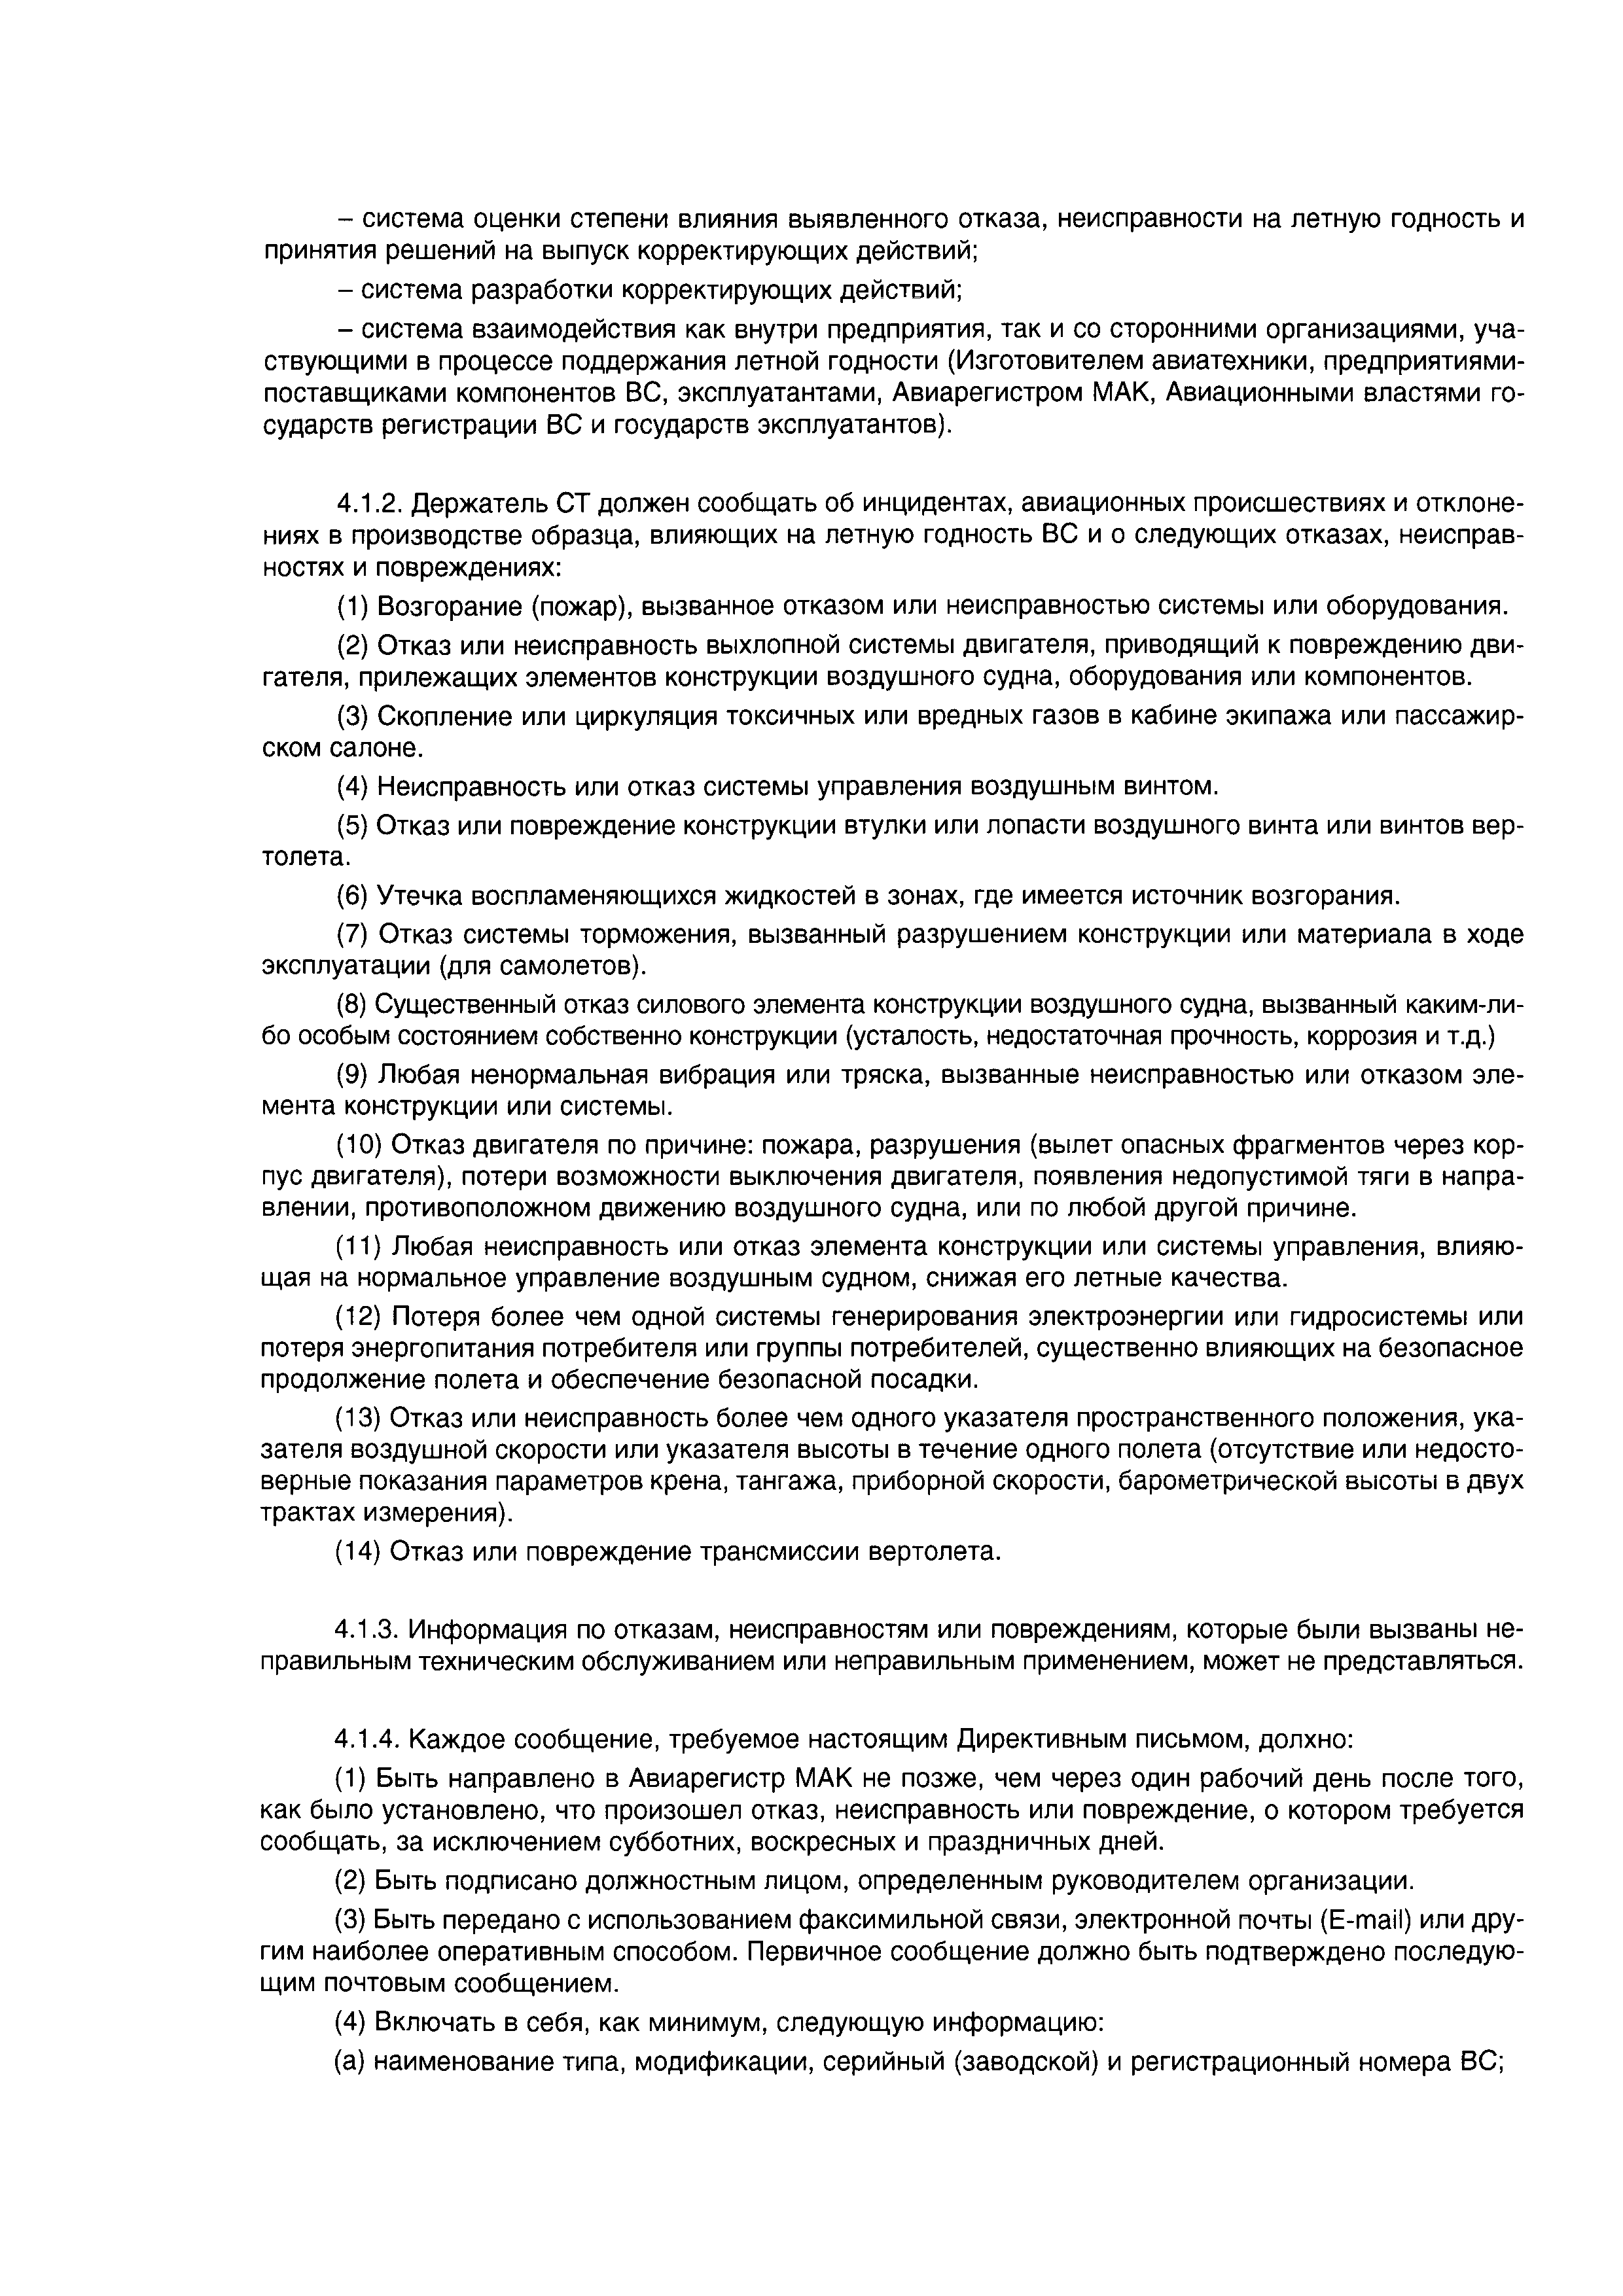 Директивное письмо 03-2004